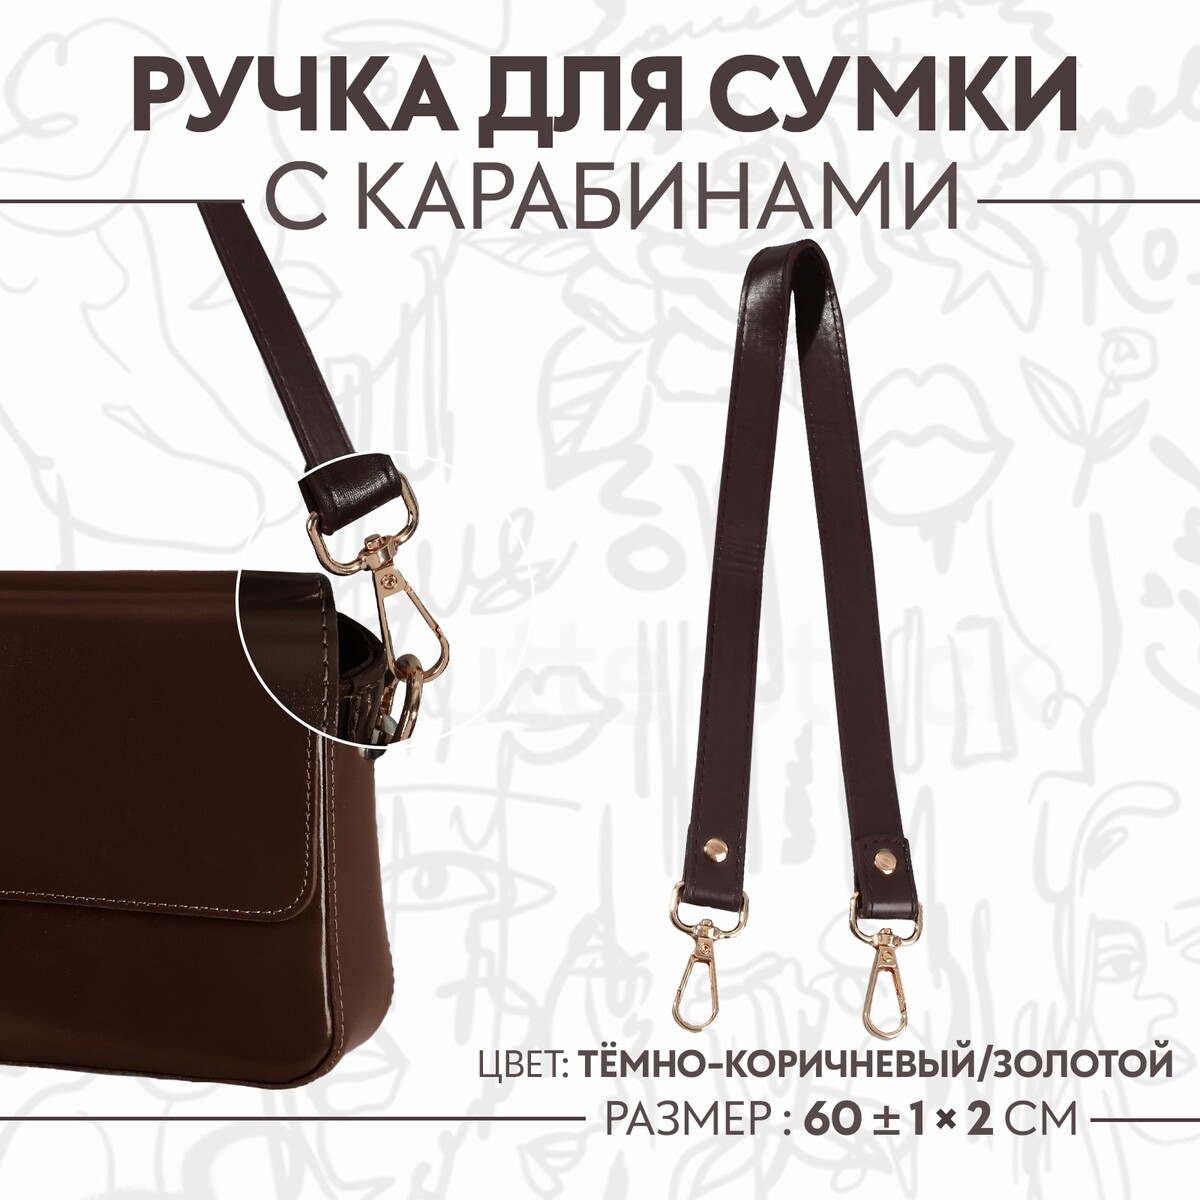 Ручка для сумки, с карабинами, 60 ± 1 см × 2 см, цвет темно-коричневый ручка для сумки стропа с карабинами 139 ± 3 × 3 8 см светло коричневый